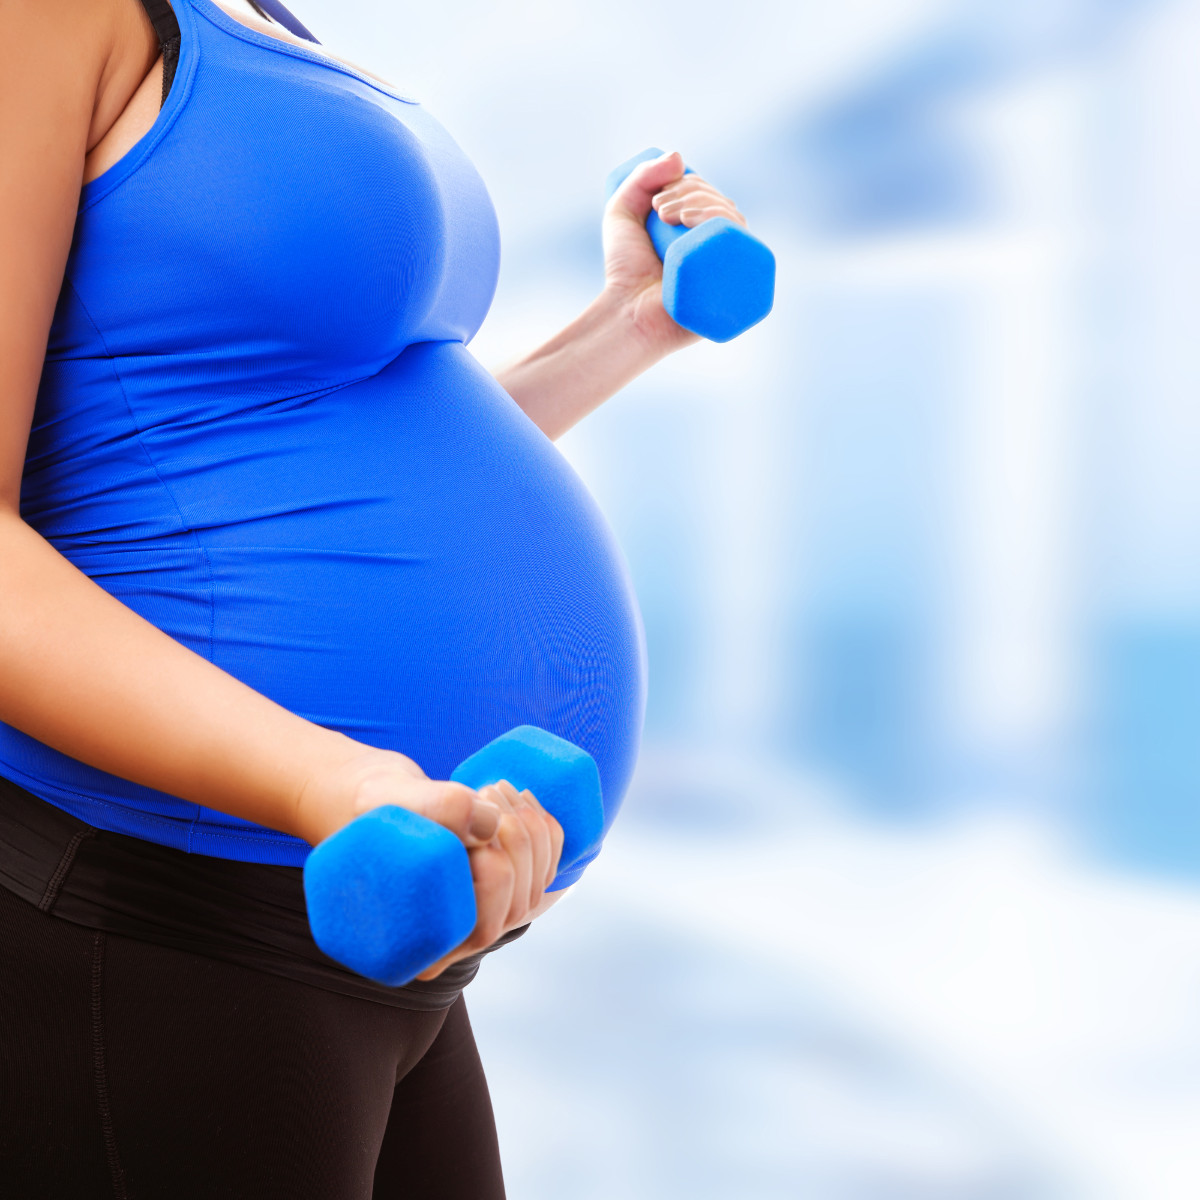 Exercícios durante a gravidez: Benefícios, modalidades e cuidados necessários